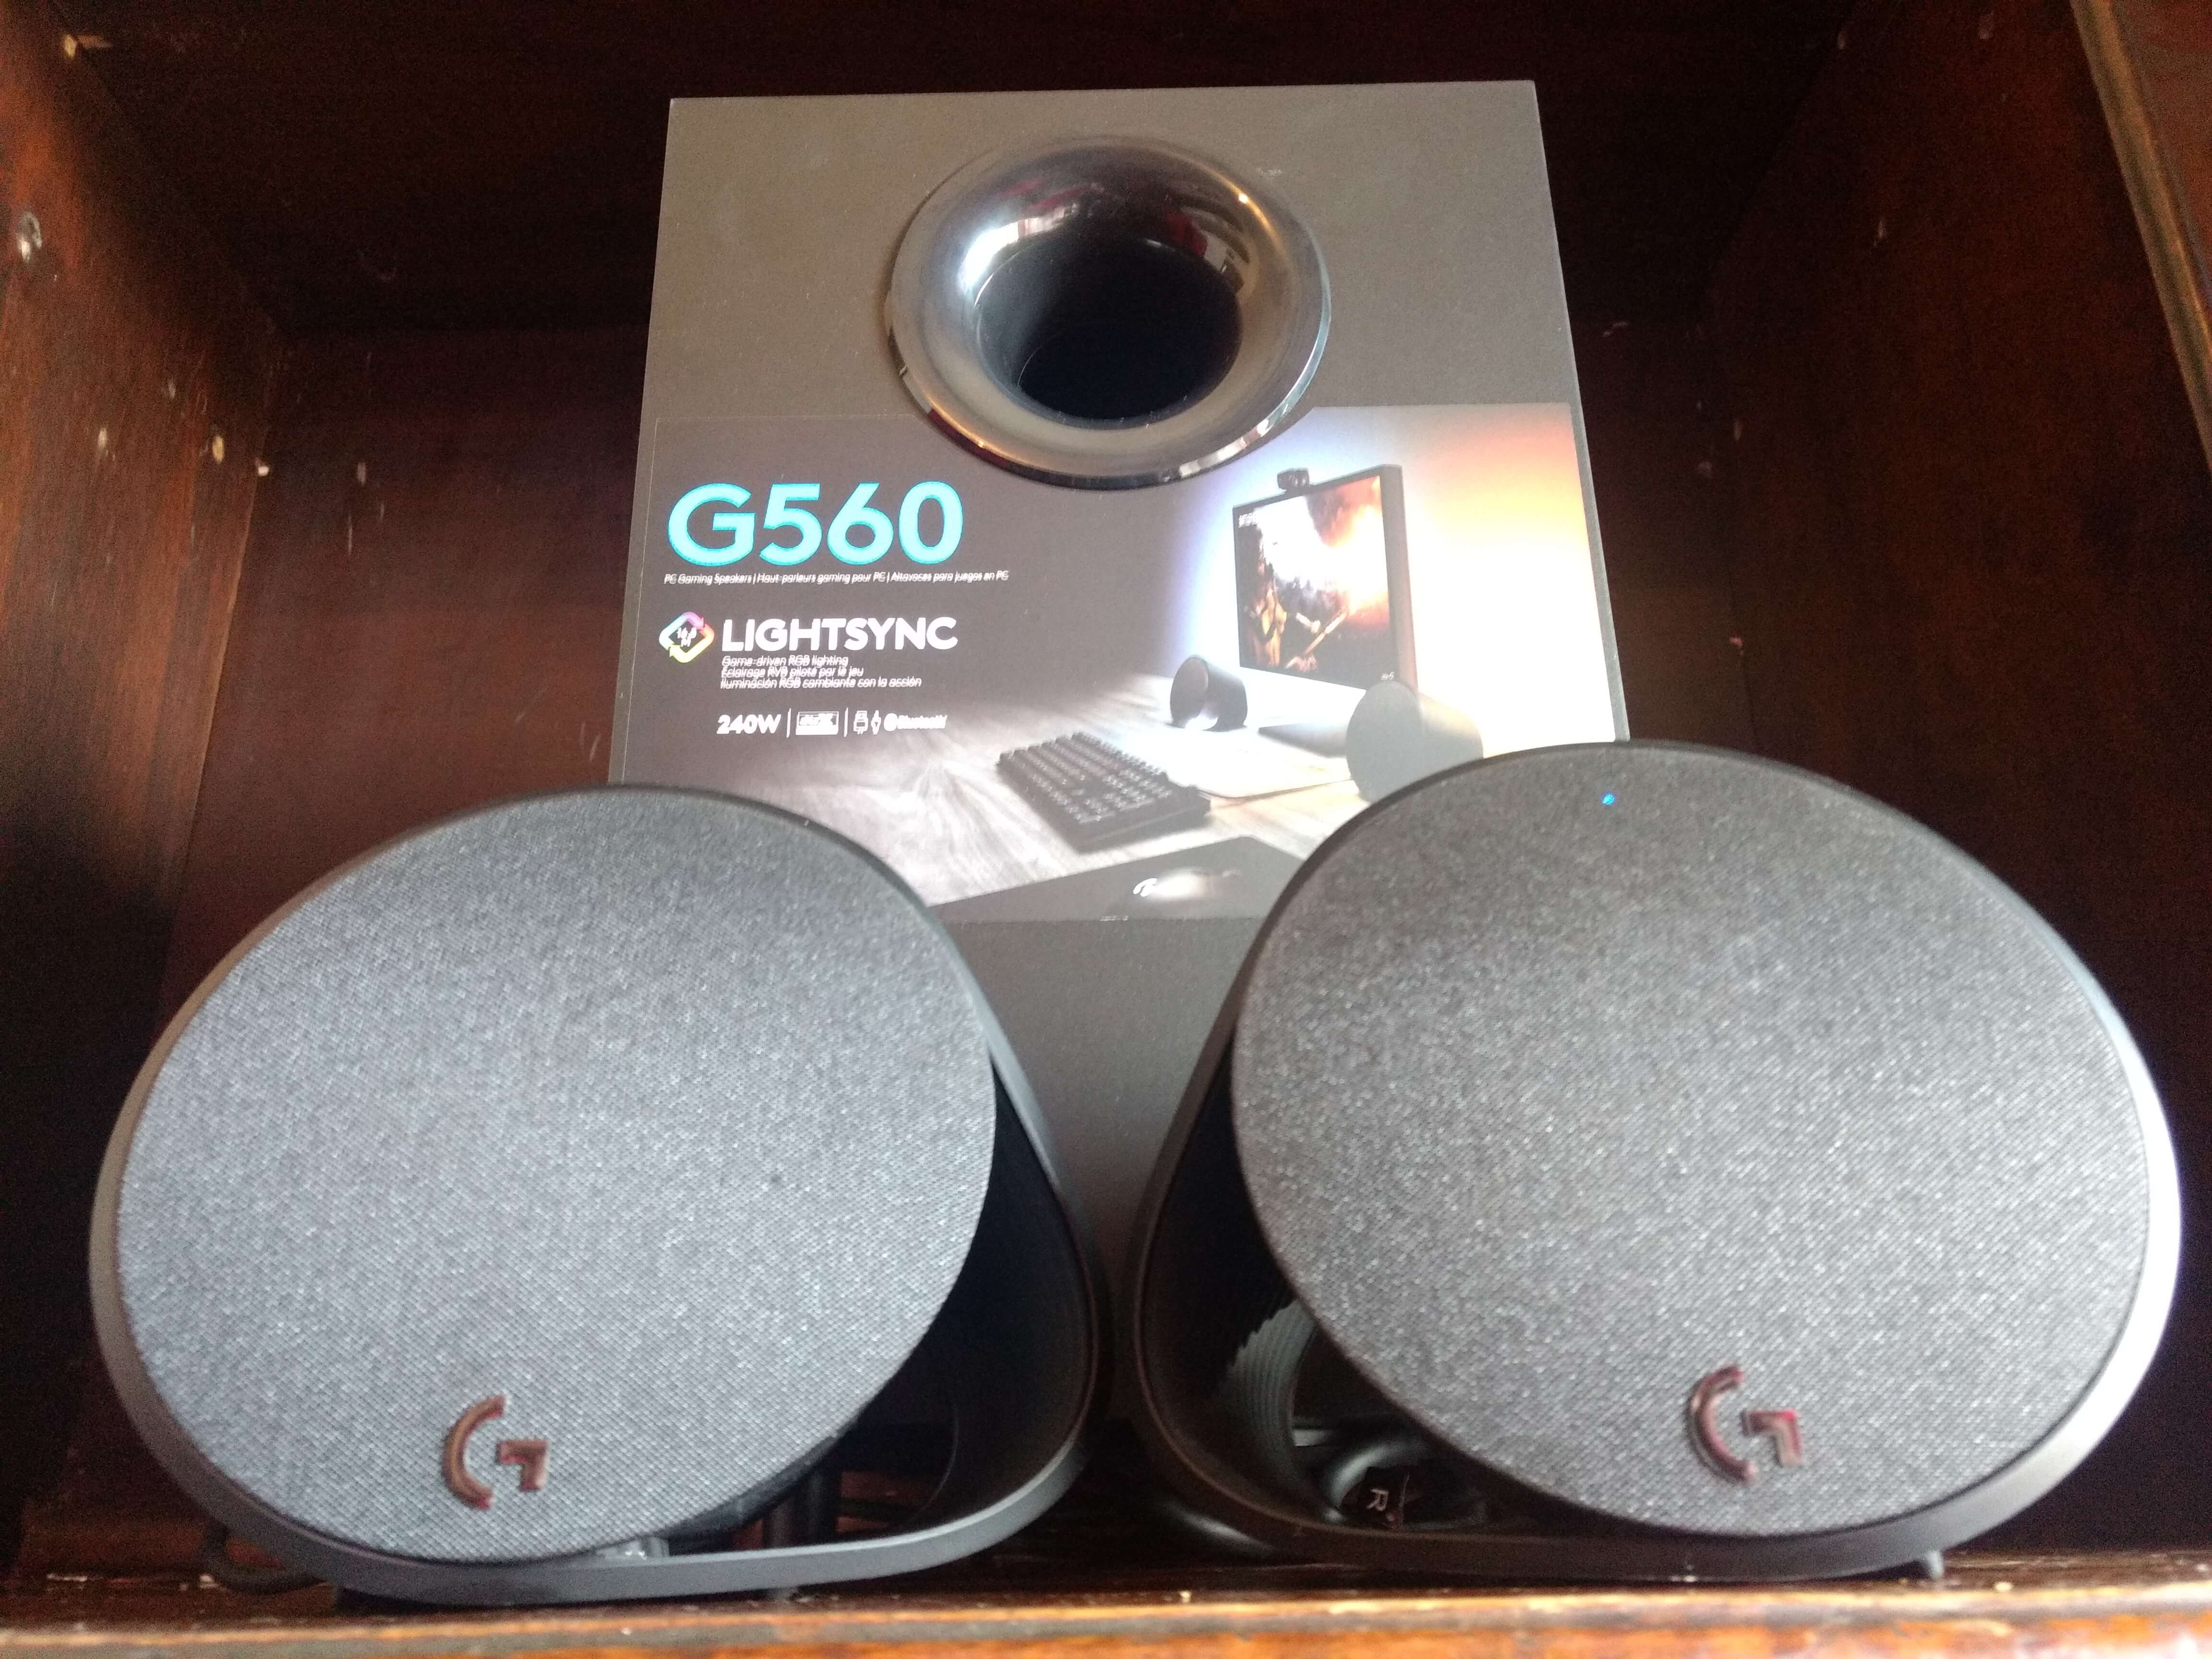 Review: logitech g560 entrega iluminação e áudio imersivos para jogos. Neste review analisamos os alto-falantes g560 da logitech que acaba de desembarcar no brasil. Será que vale a pena o investimento? Confira!